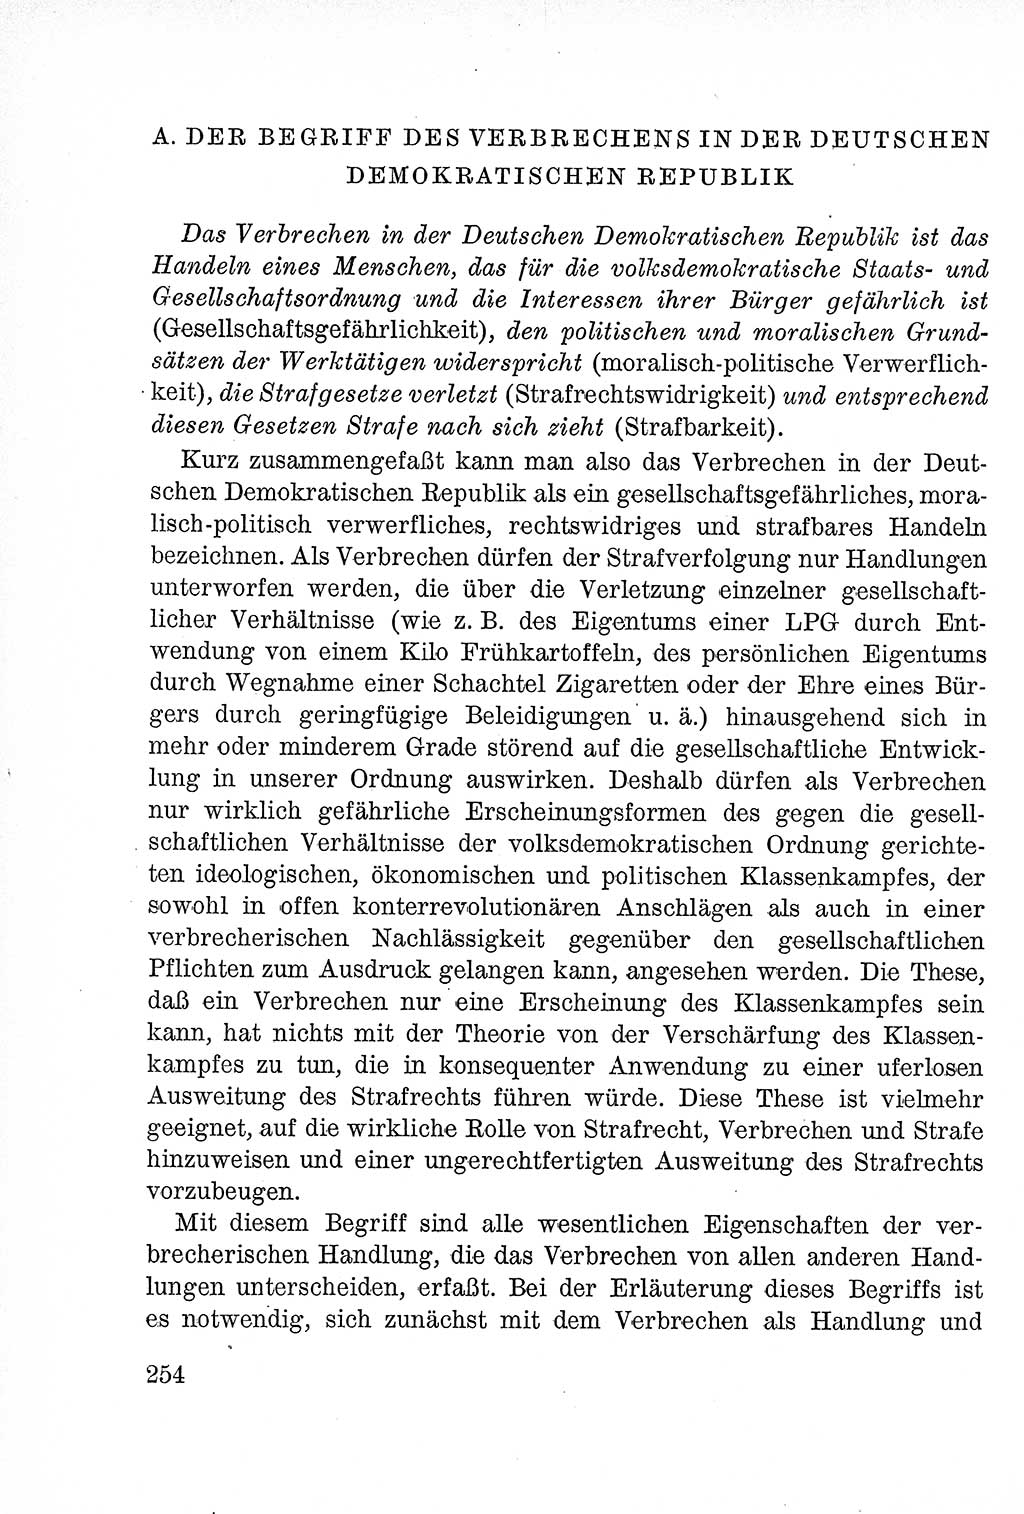 Lehrbuch des Strafrechts der Deutschen Demokratischen Republik (DDR), Allgemeiner Teil 1957, Seite 254 (Lb. Strafr. DDR AT 1957, S. 254)